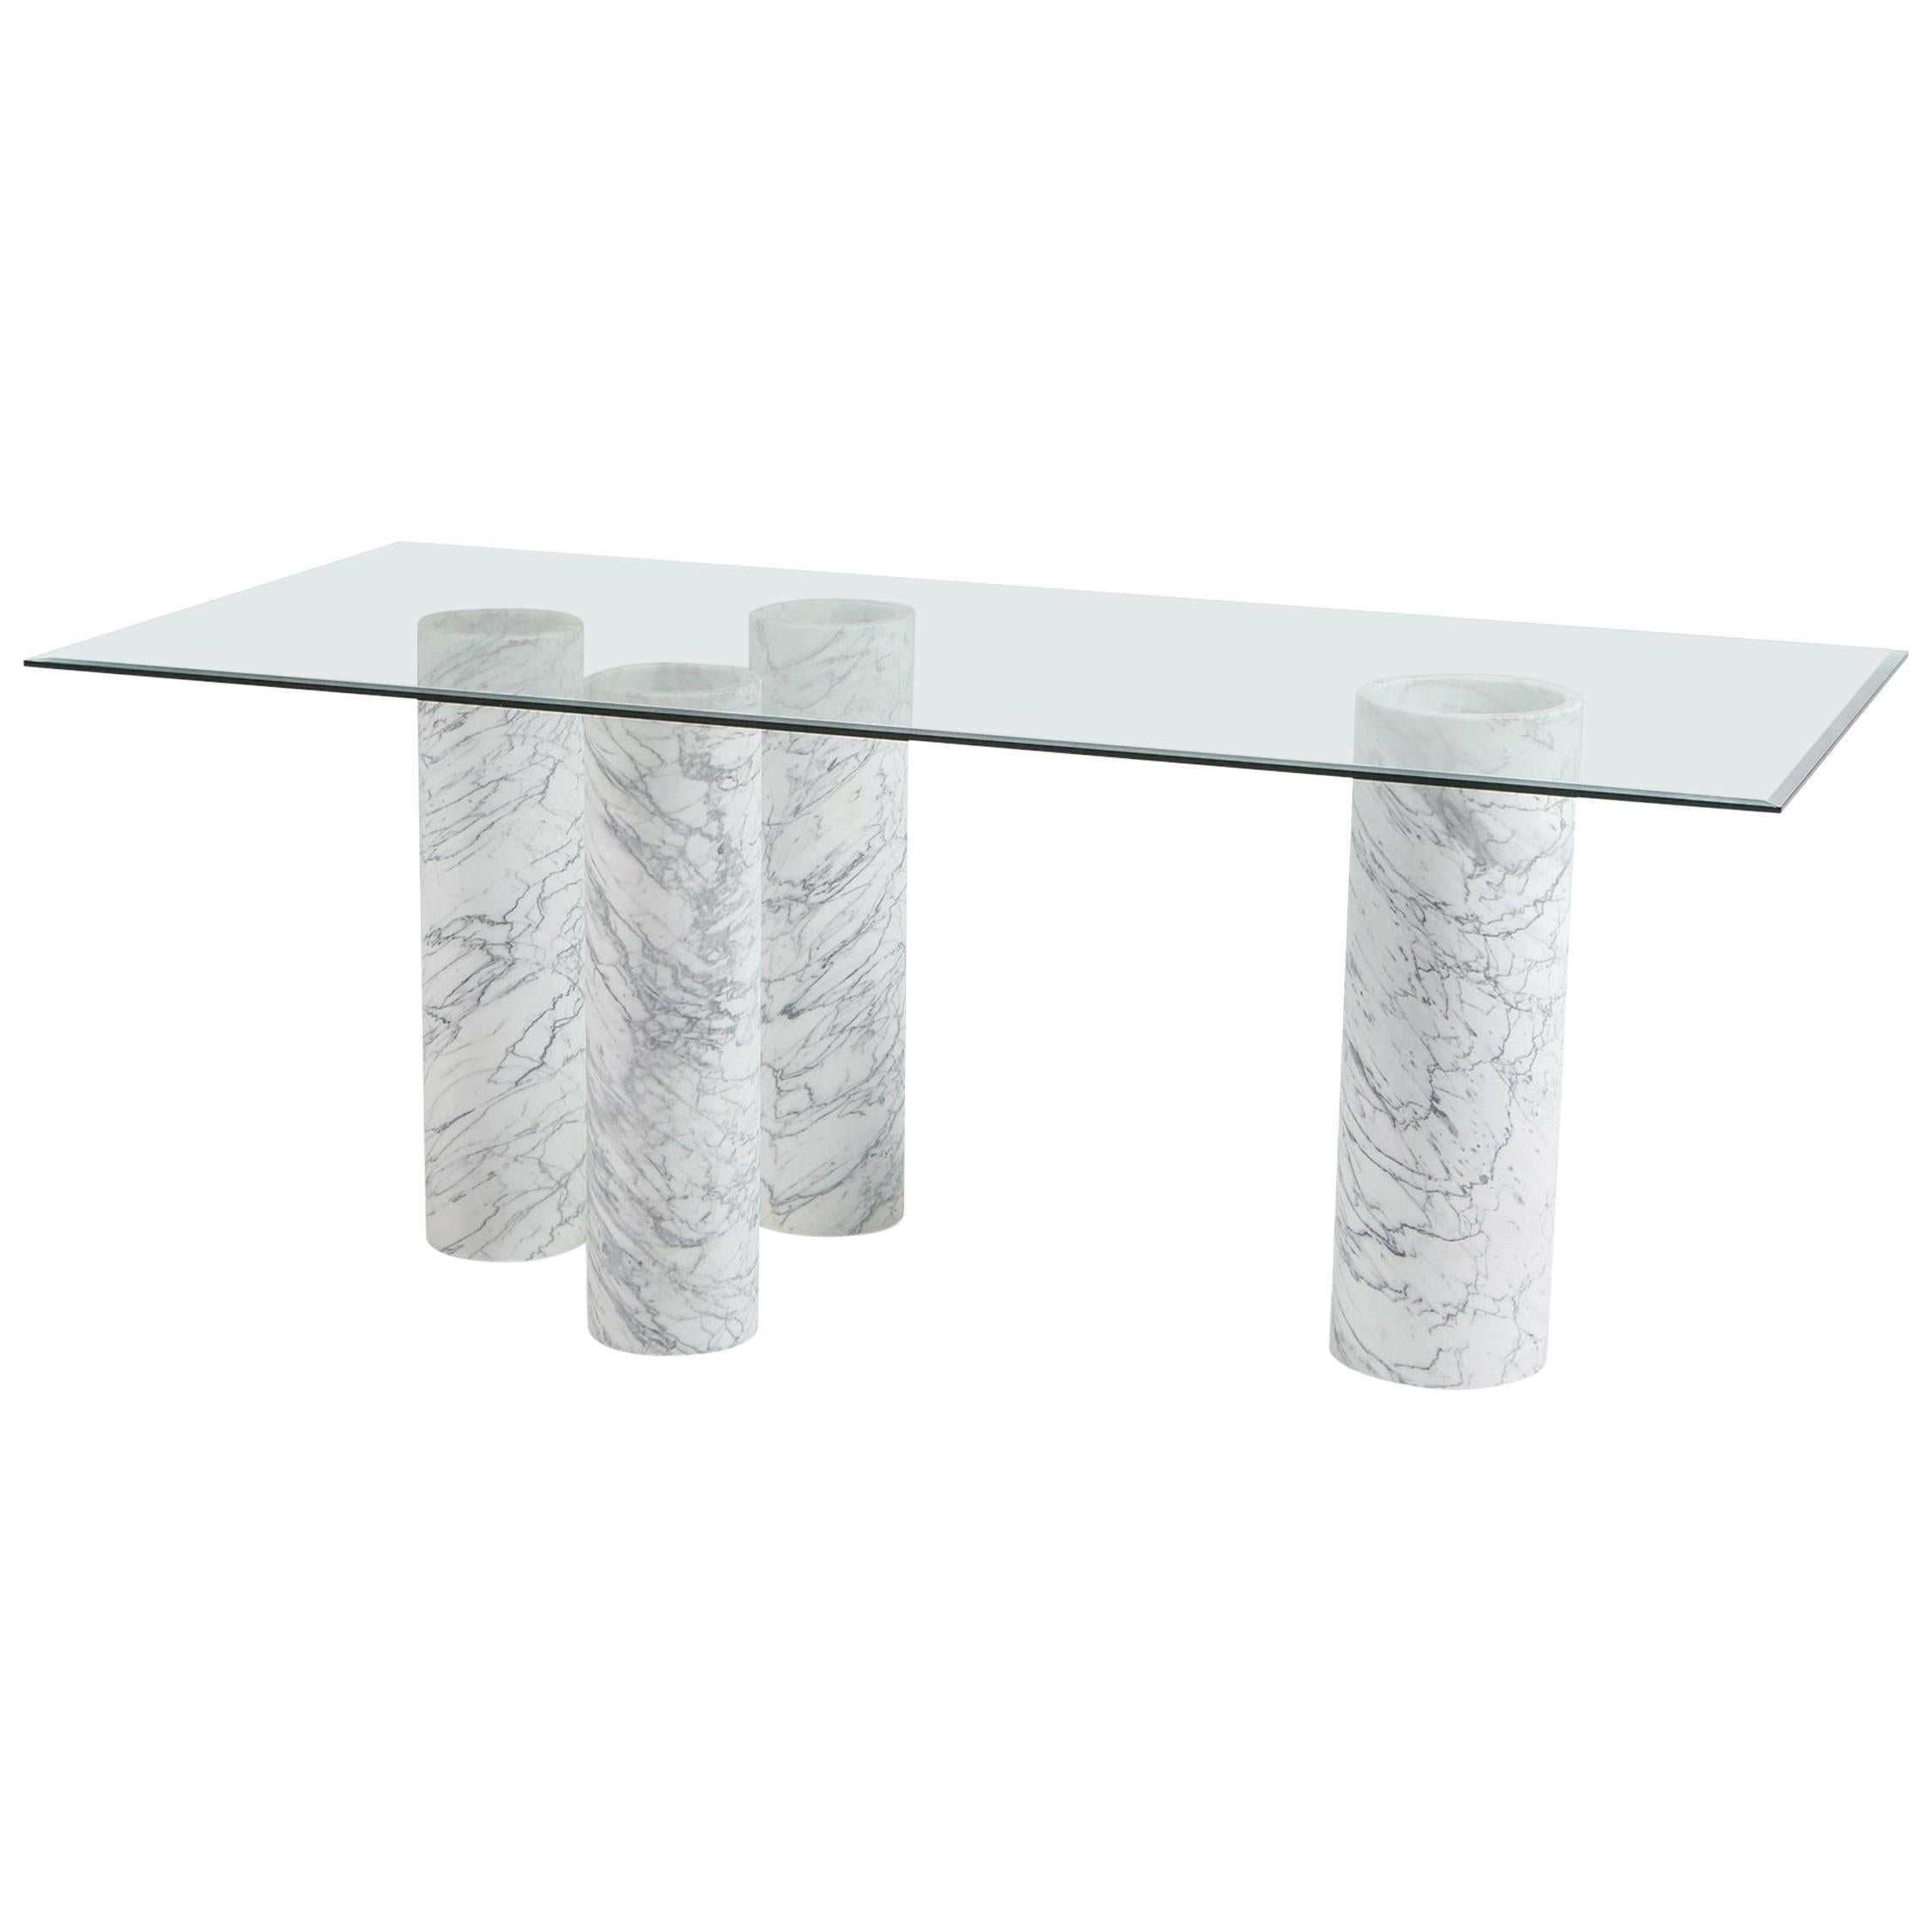 Carrara 'Collonato' Table with Glass Top in the Style of Mario Bellini